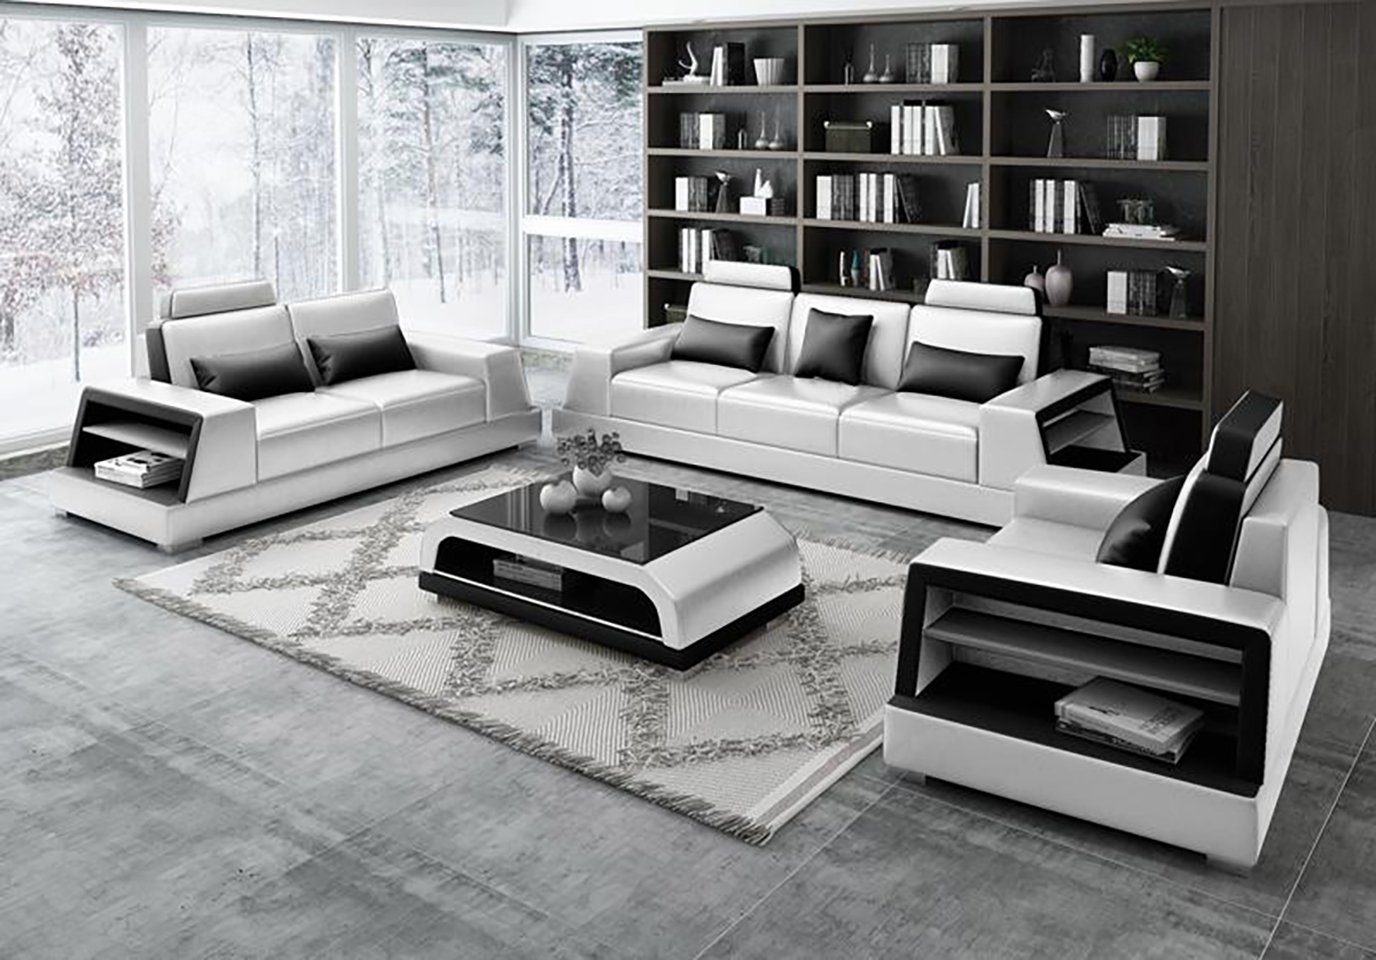 JVmoebel Sofa Wohnzimmer Beige Polster Sofagarnitur 3+2+2 Sitzer Modern Neu, Made in Europe